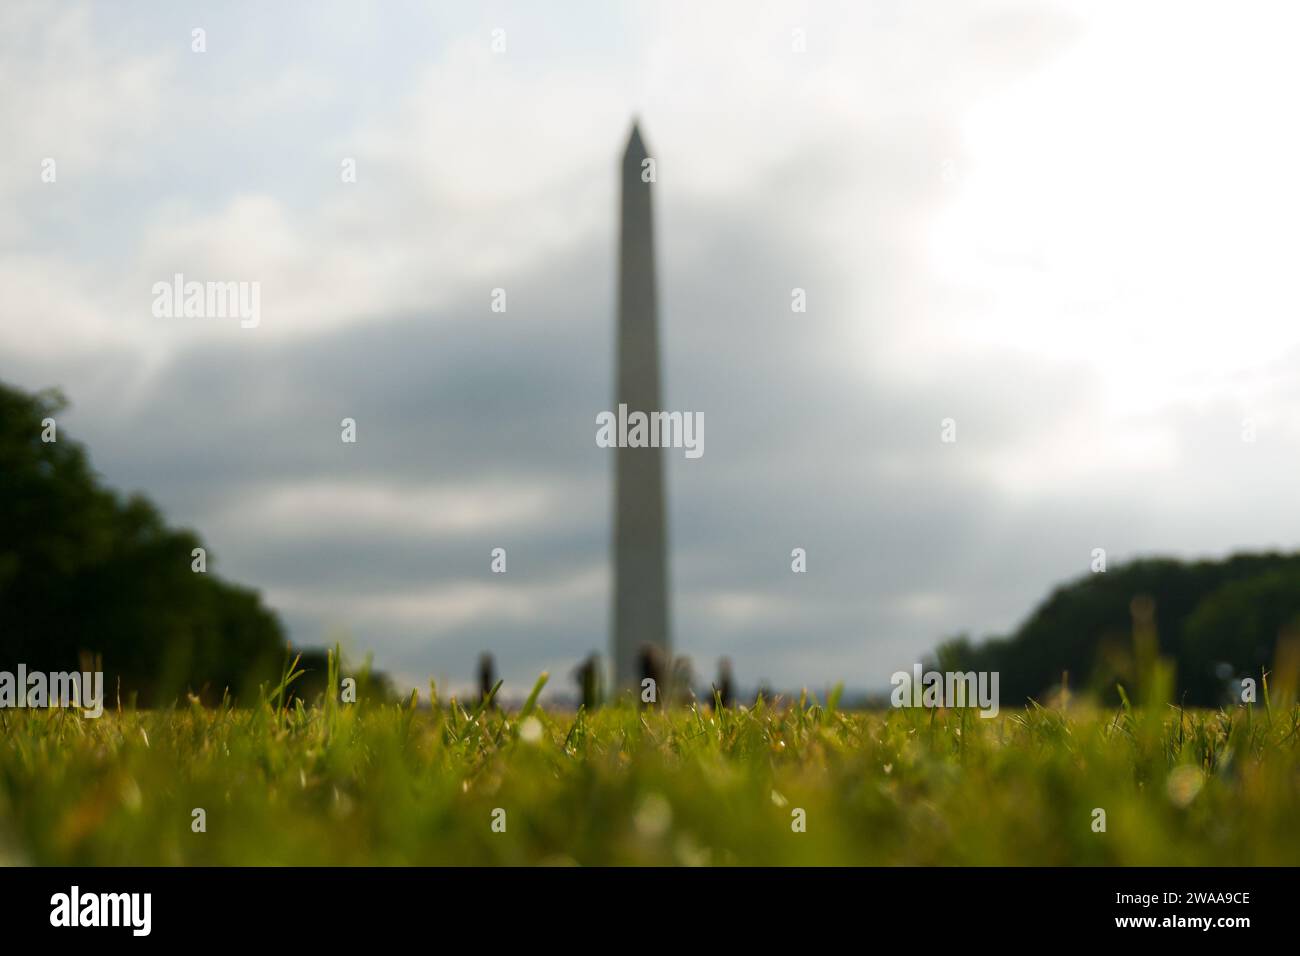 Le Washington Monument se dresse éthéré à travers une douce brume matinale, un avant-plan vert tranquille offrant une perspective unique sur cet obeli historique Banque D'Images